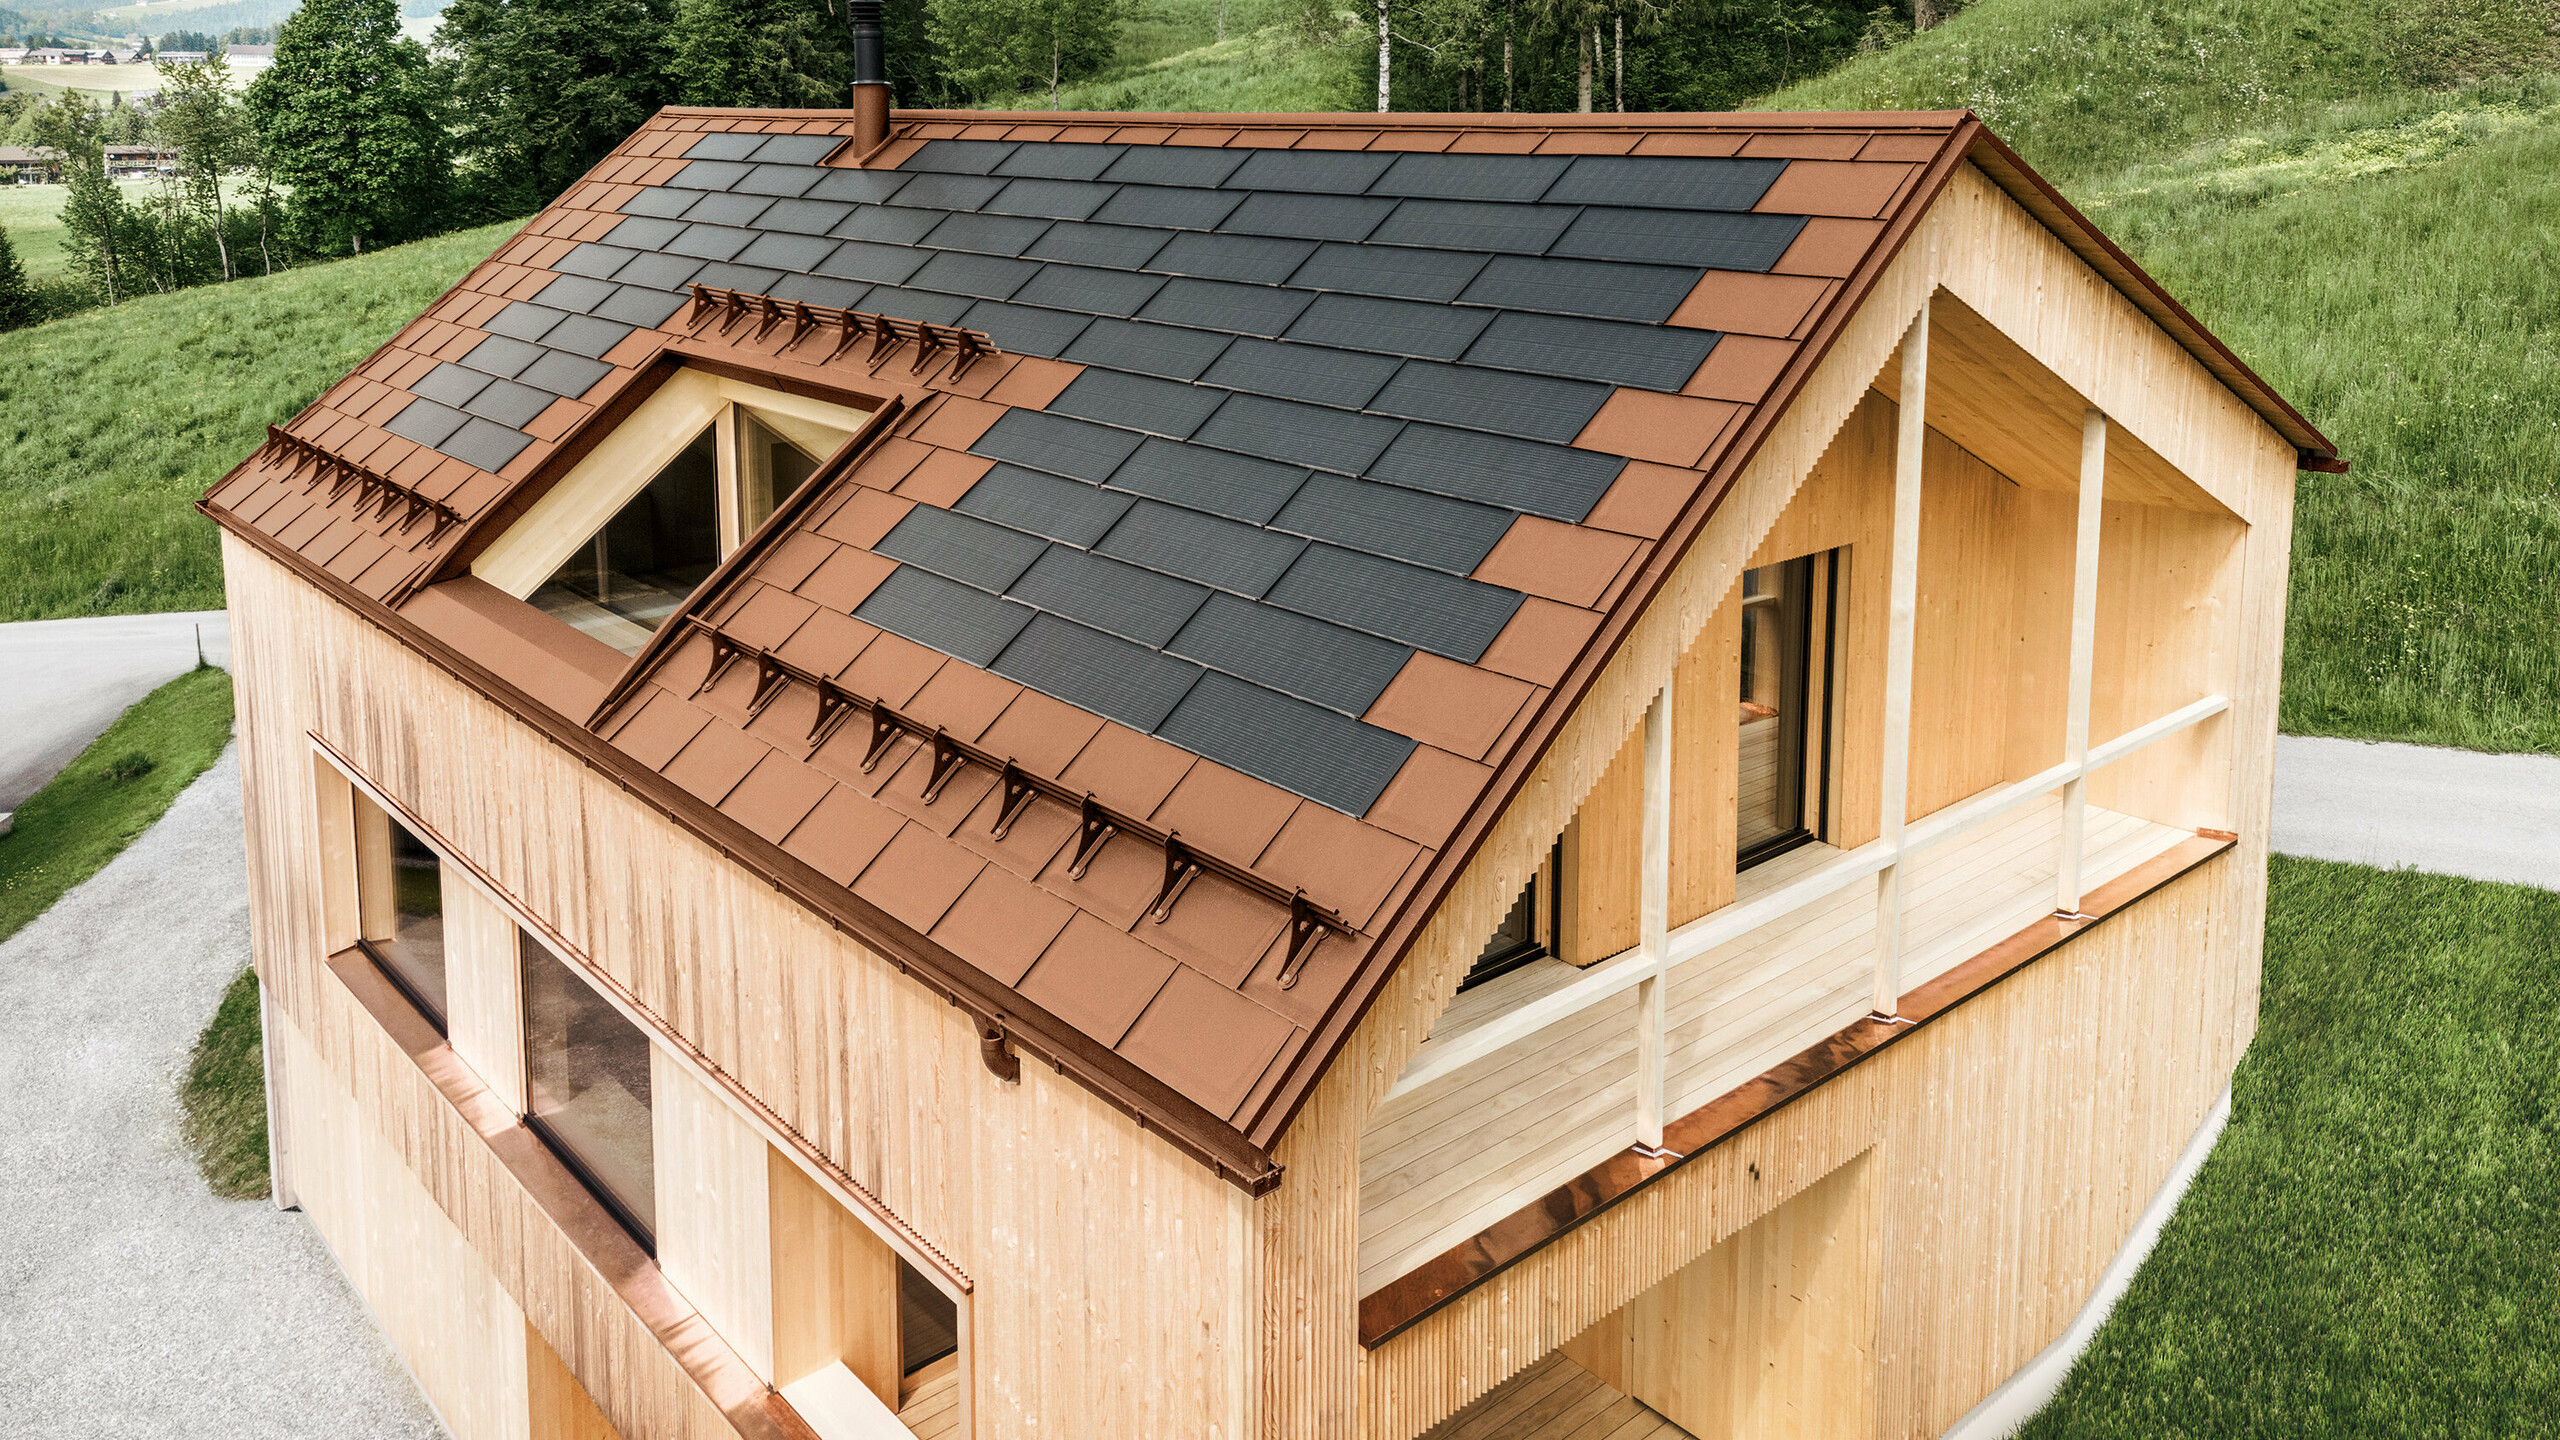 Maison individuelle située dans la localité autrichienne d'Egg, avec le panneau solaire de toiture PREFA et le panneau de toiture R.16 en rouge brique, combinés à une façade en bois.